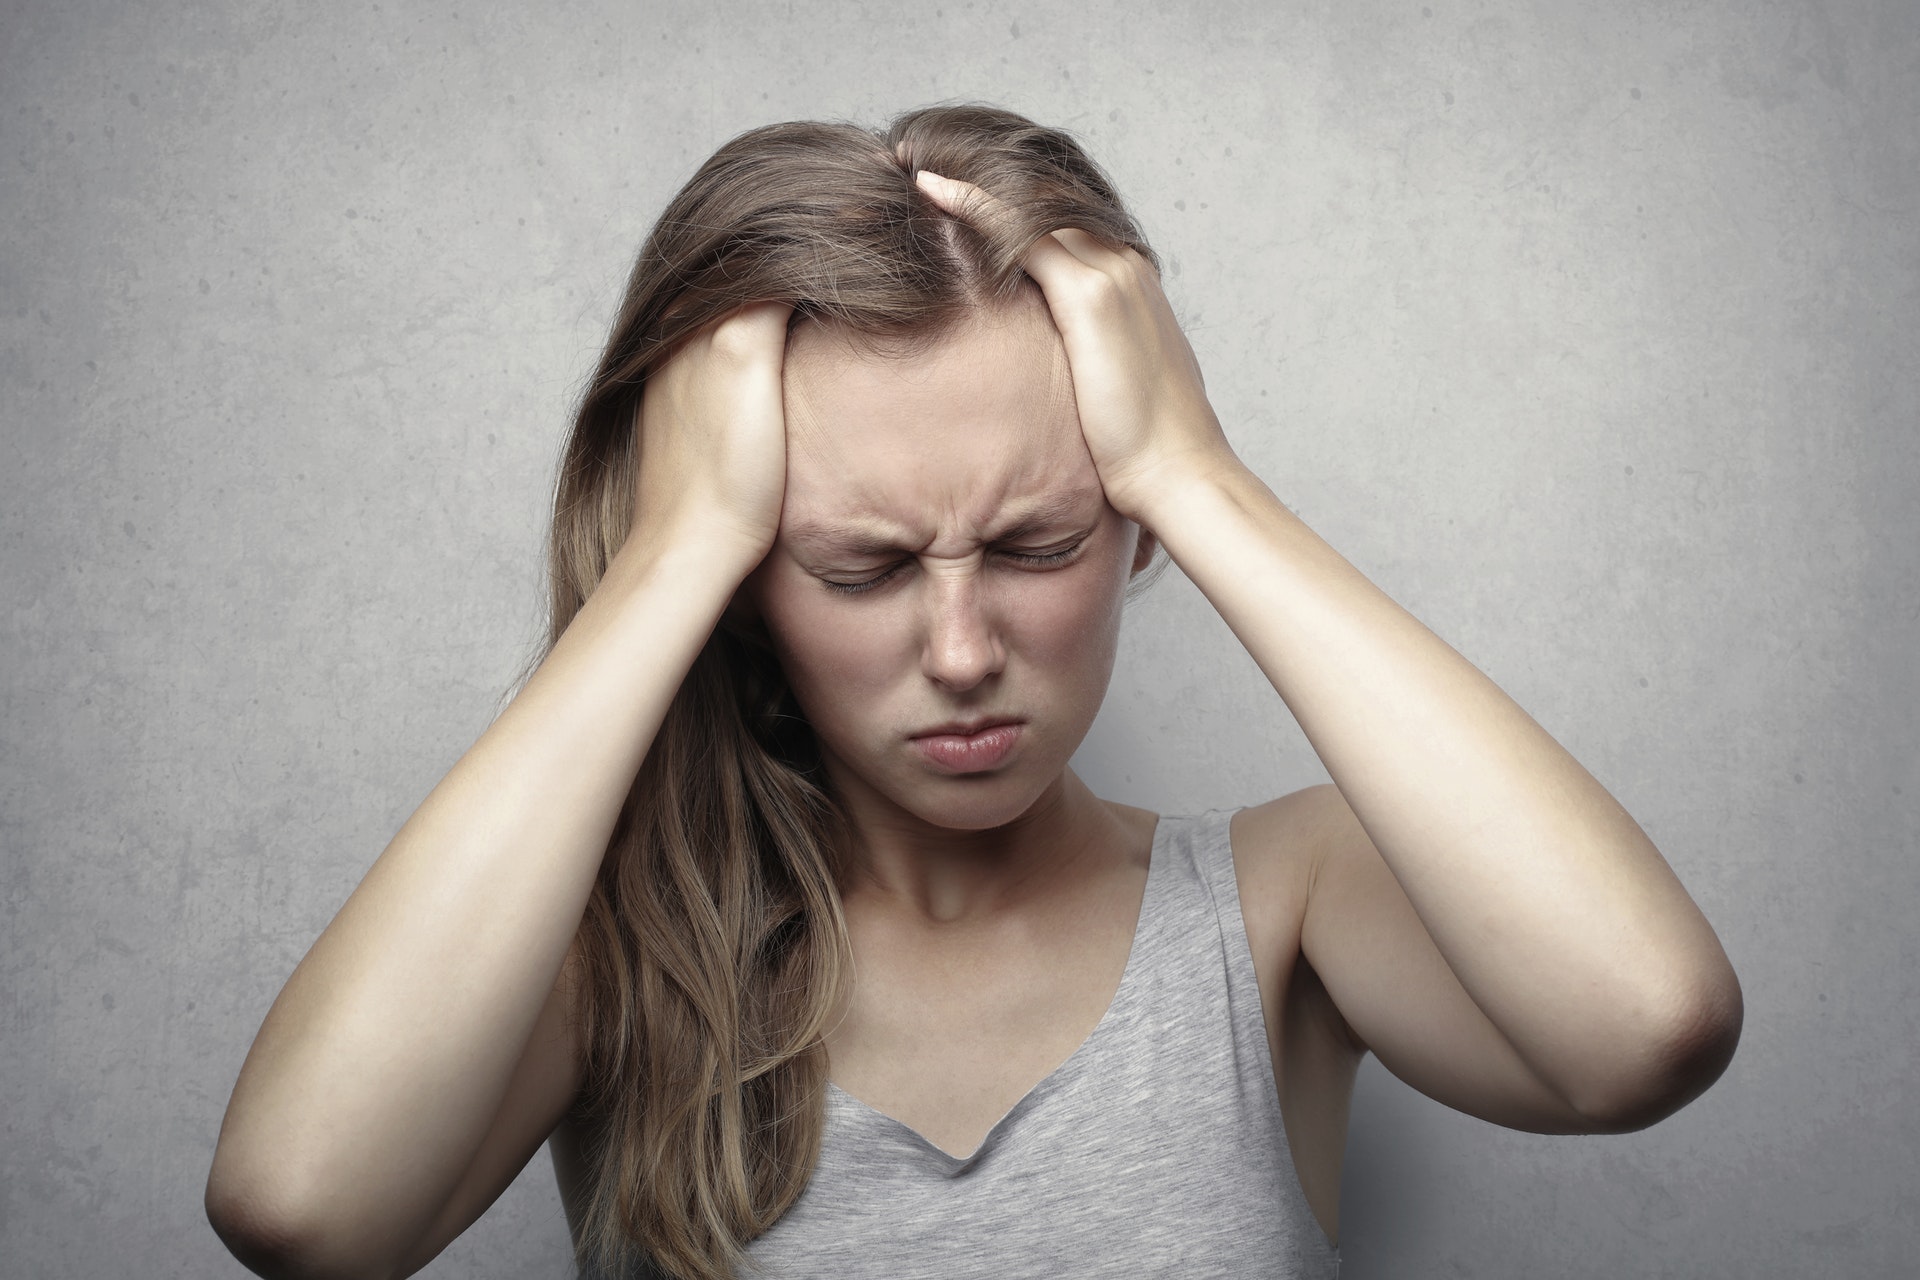 Dos de cada diez personas sufren dolores de cabeza, ¿cómo remediarlo?